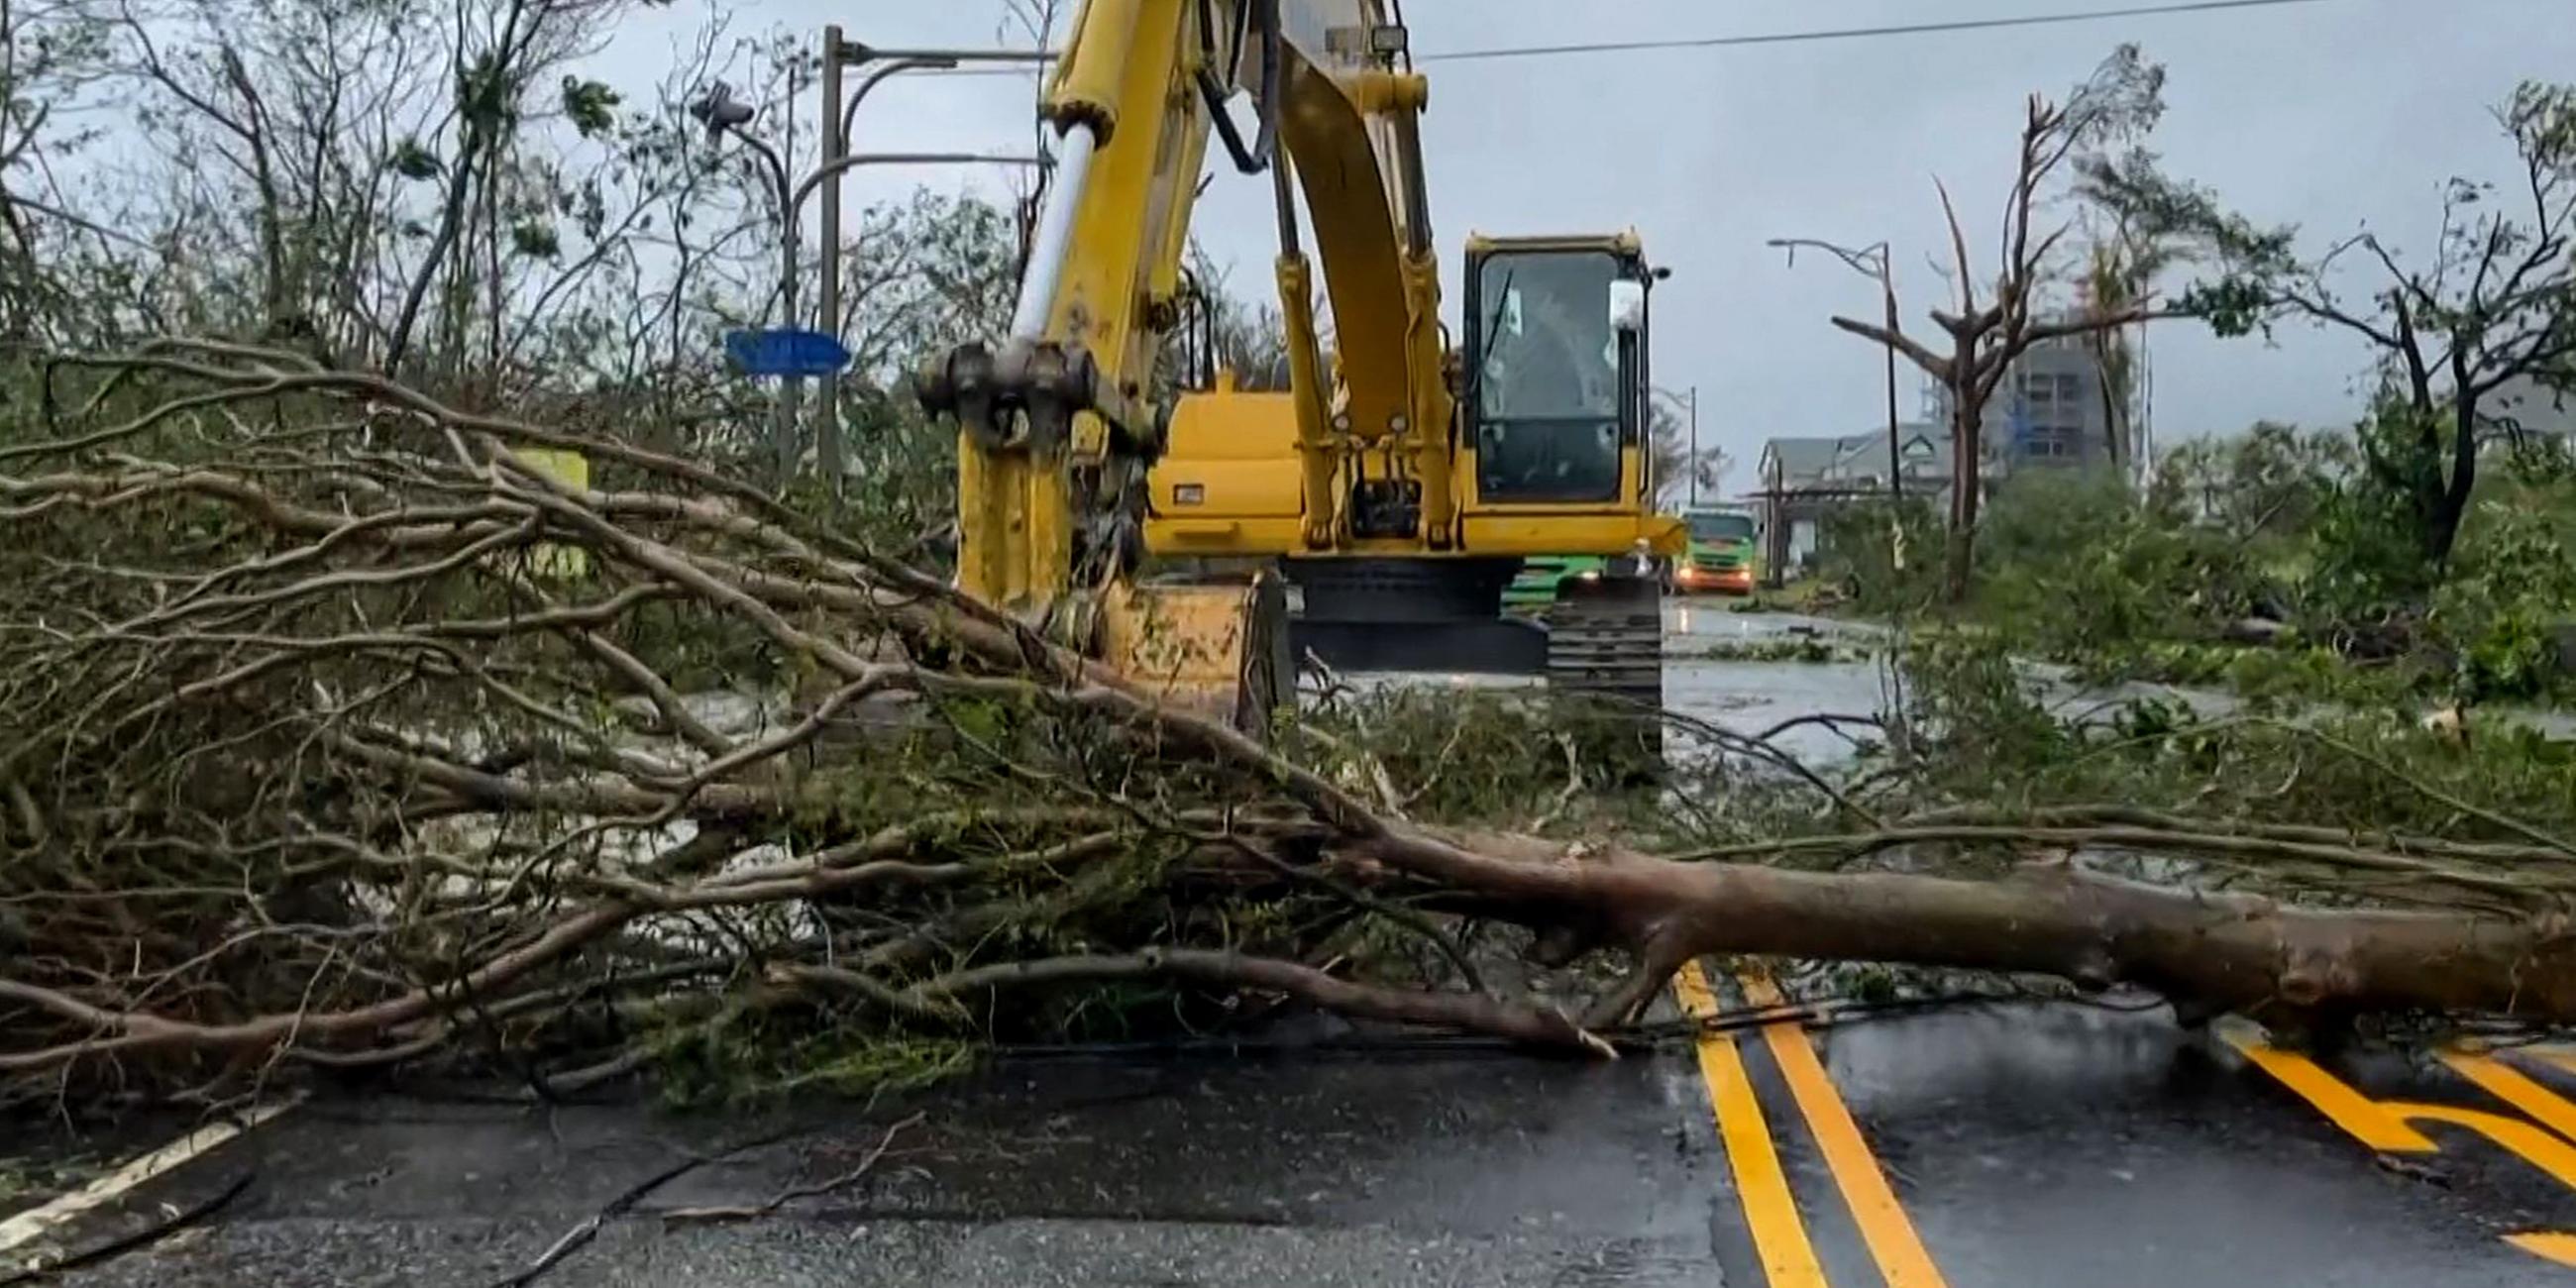 Taifun Haikui hinterlässt umgestürzte Bäume, Überschwemmungen und anhaltende Regenfälle